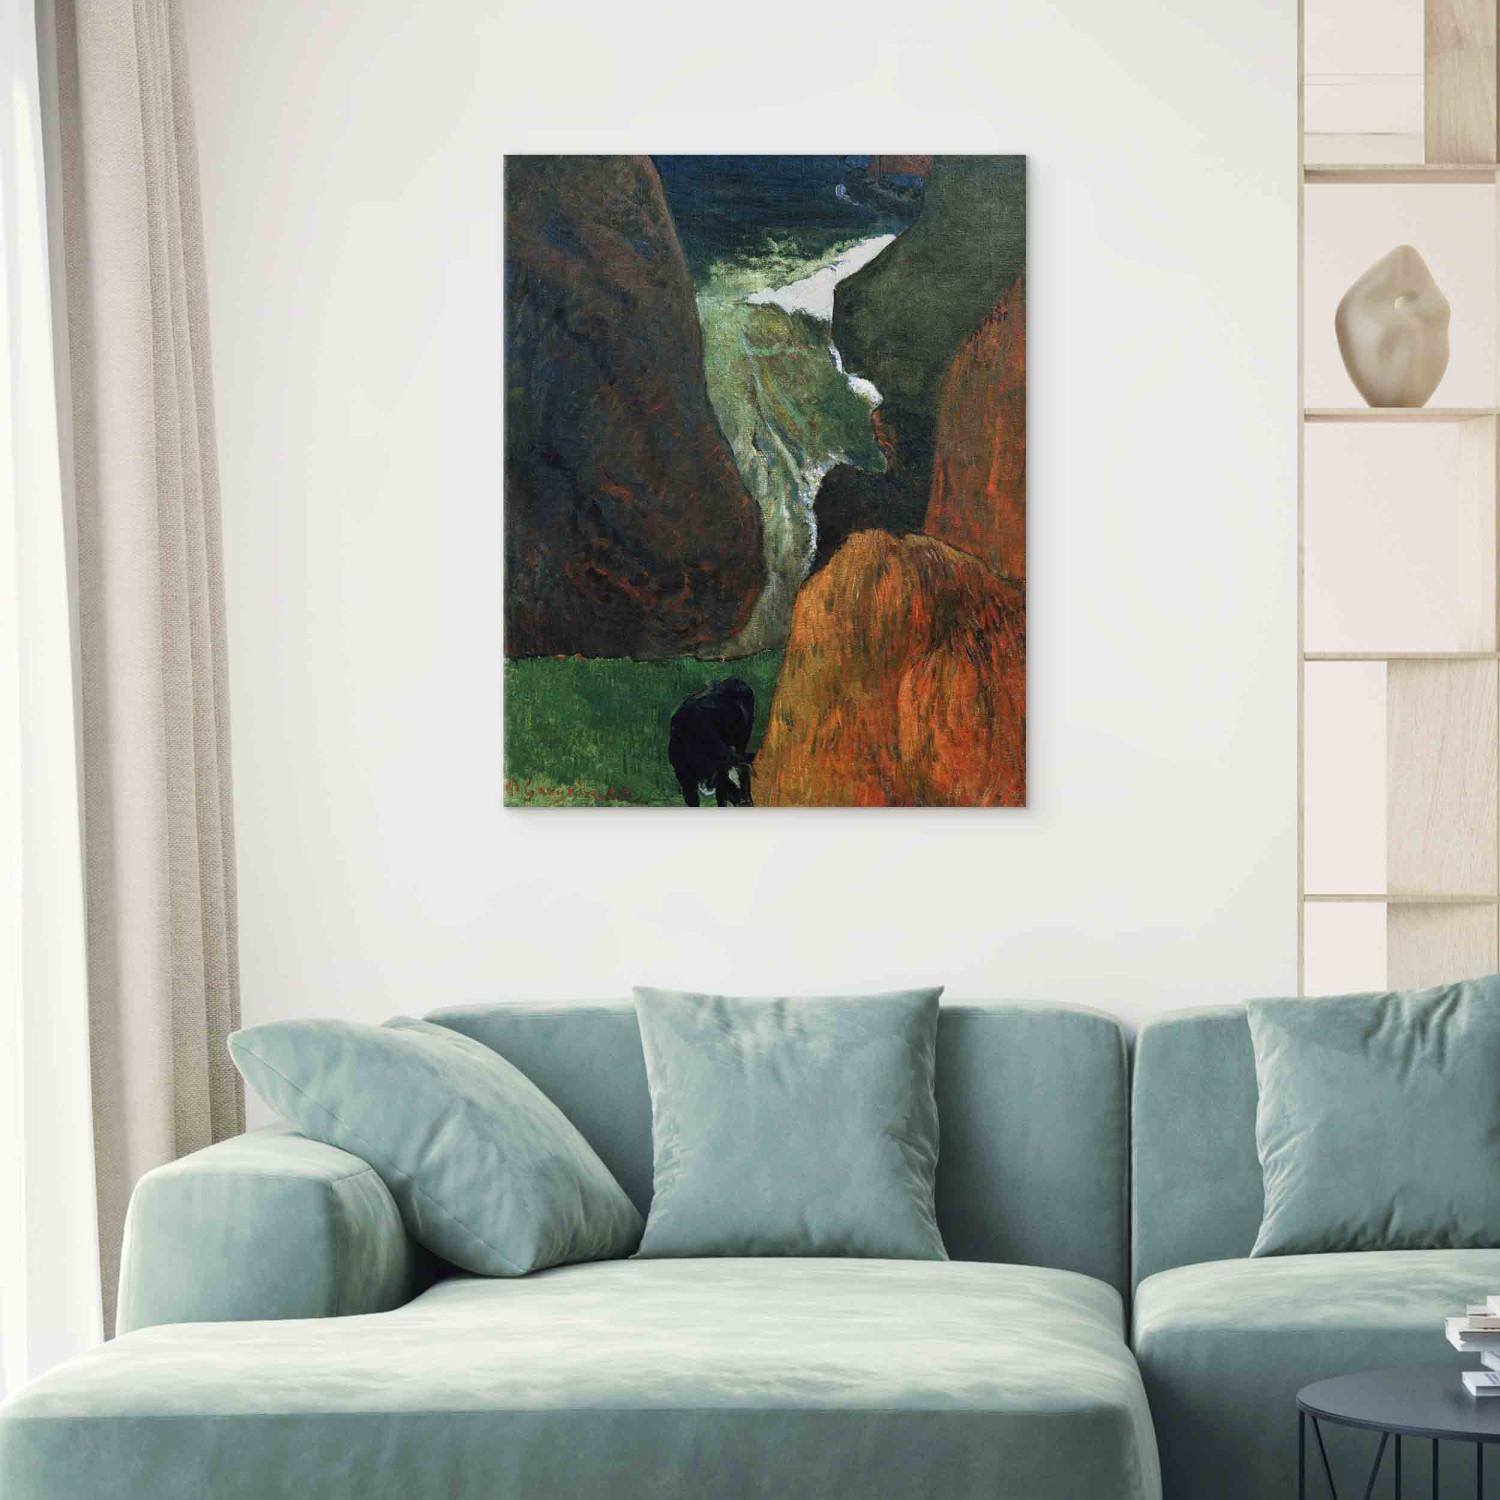 Reproducción de cuadro Landscape with cow between th.cliffs 